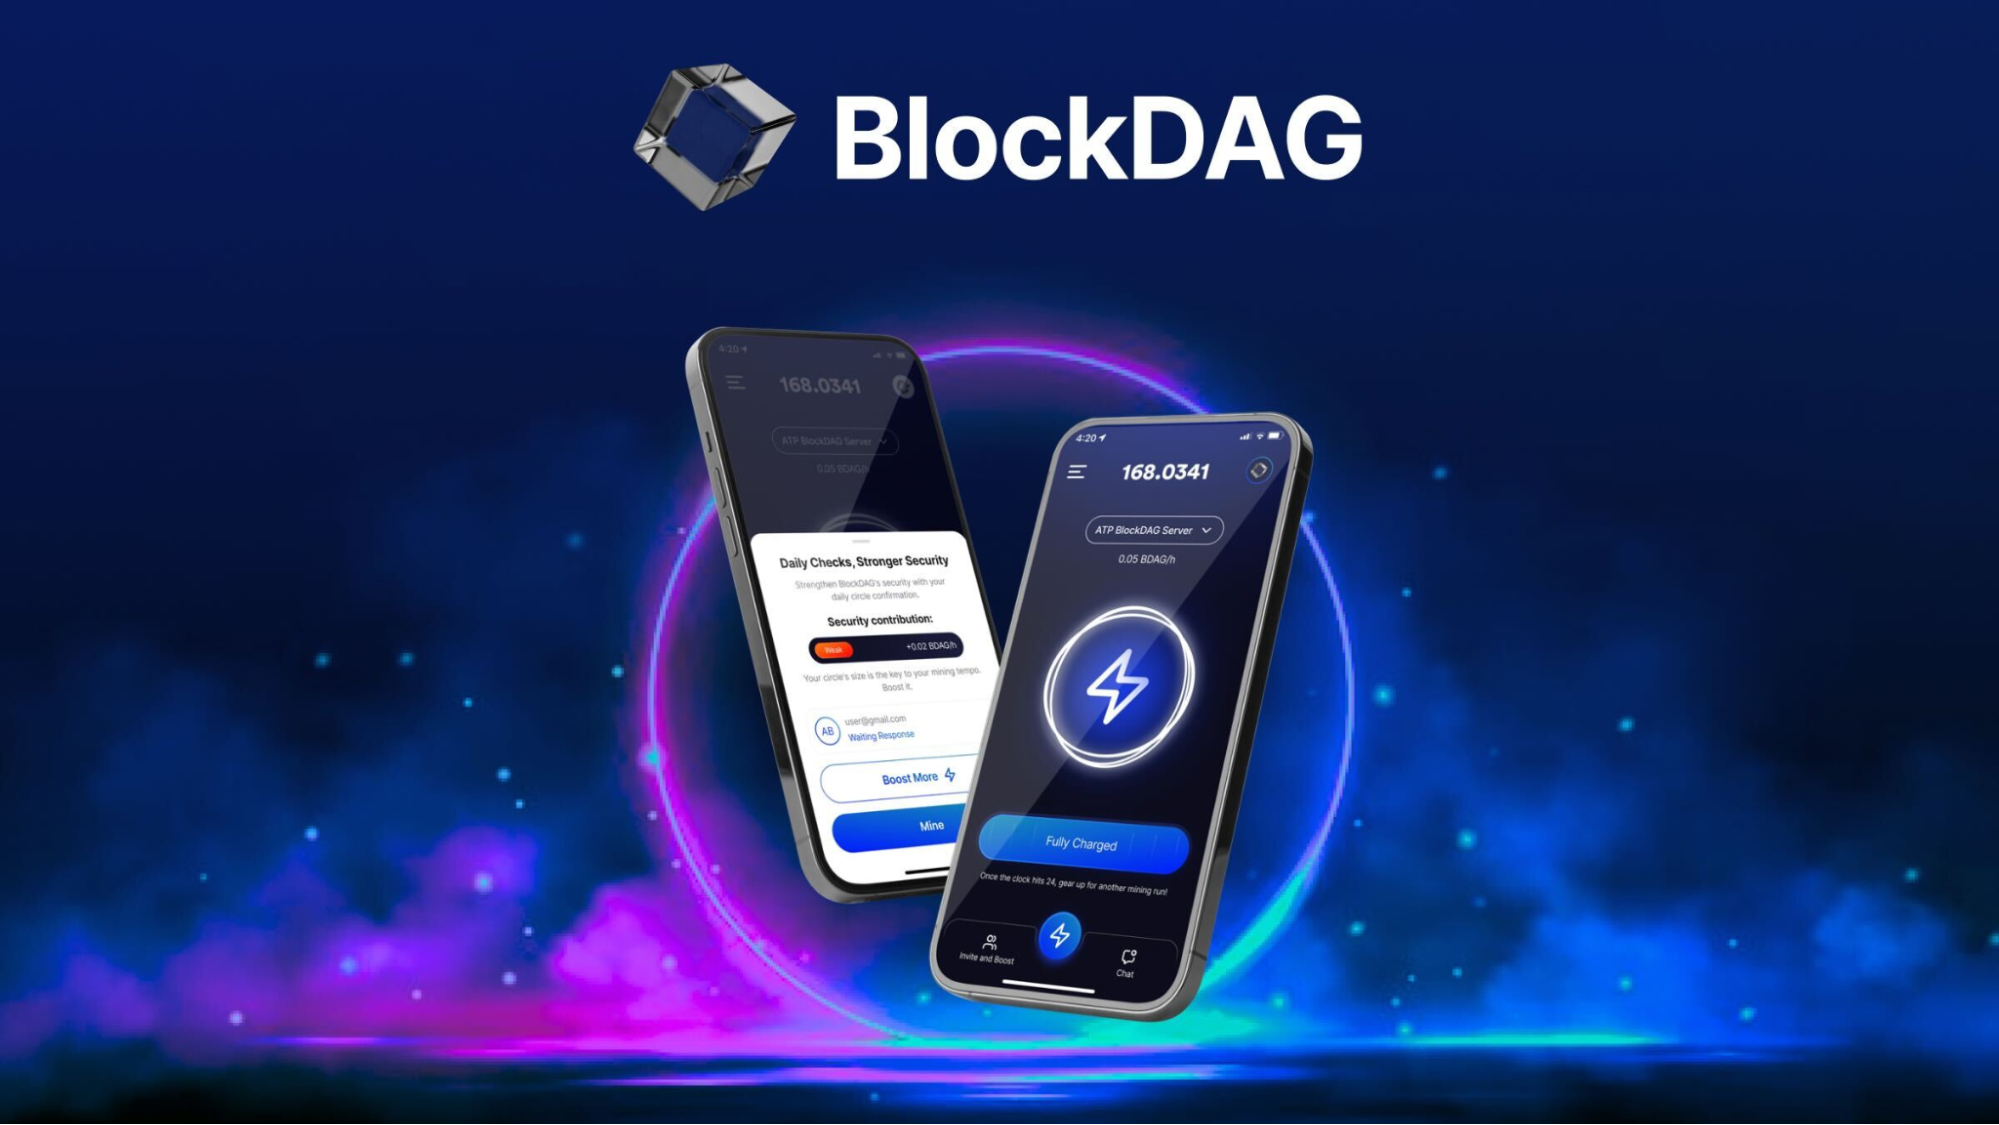 BlockDAG platform